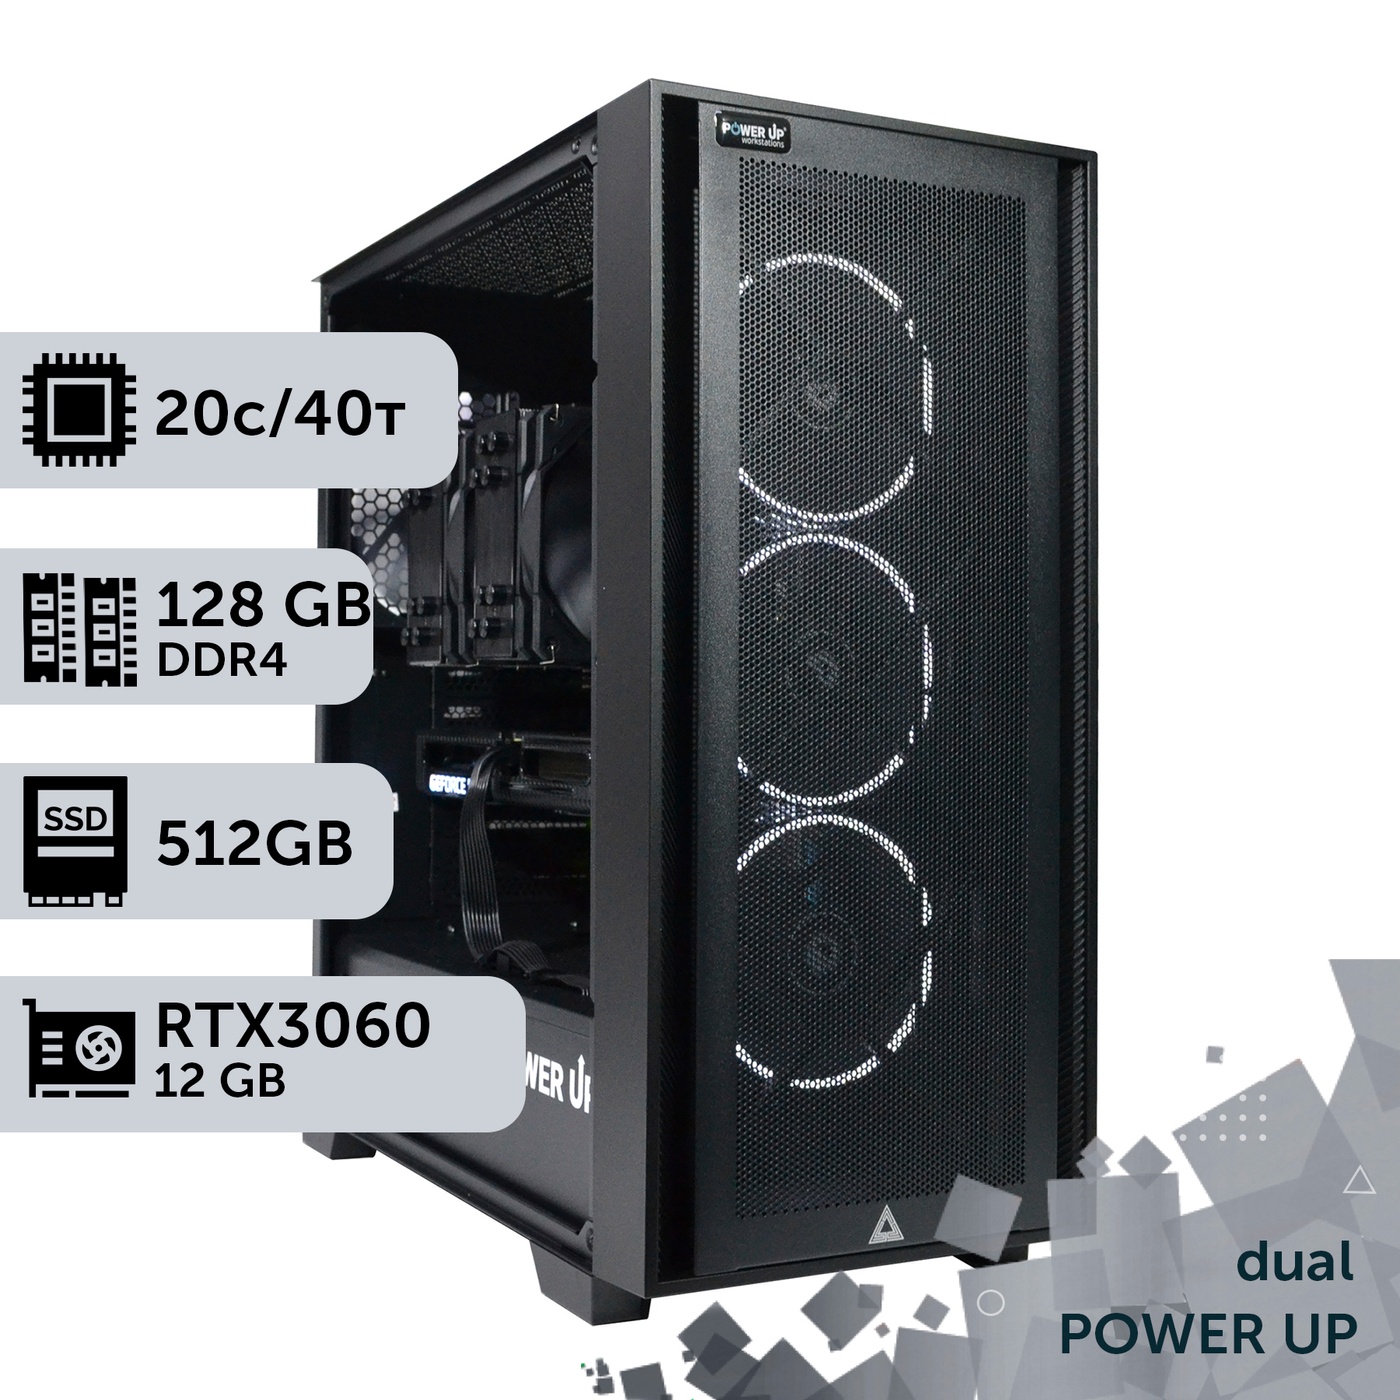 Двухпроцессорная рабочая станция PowerUp #340 Xeon E5 2670 v2 x2/128 GB/HDD 2 TB/SSD 512GB/GeForce RTX 3060 12GB